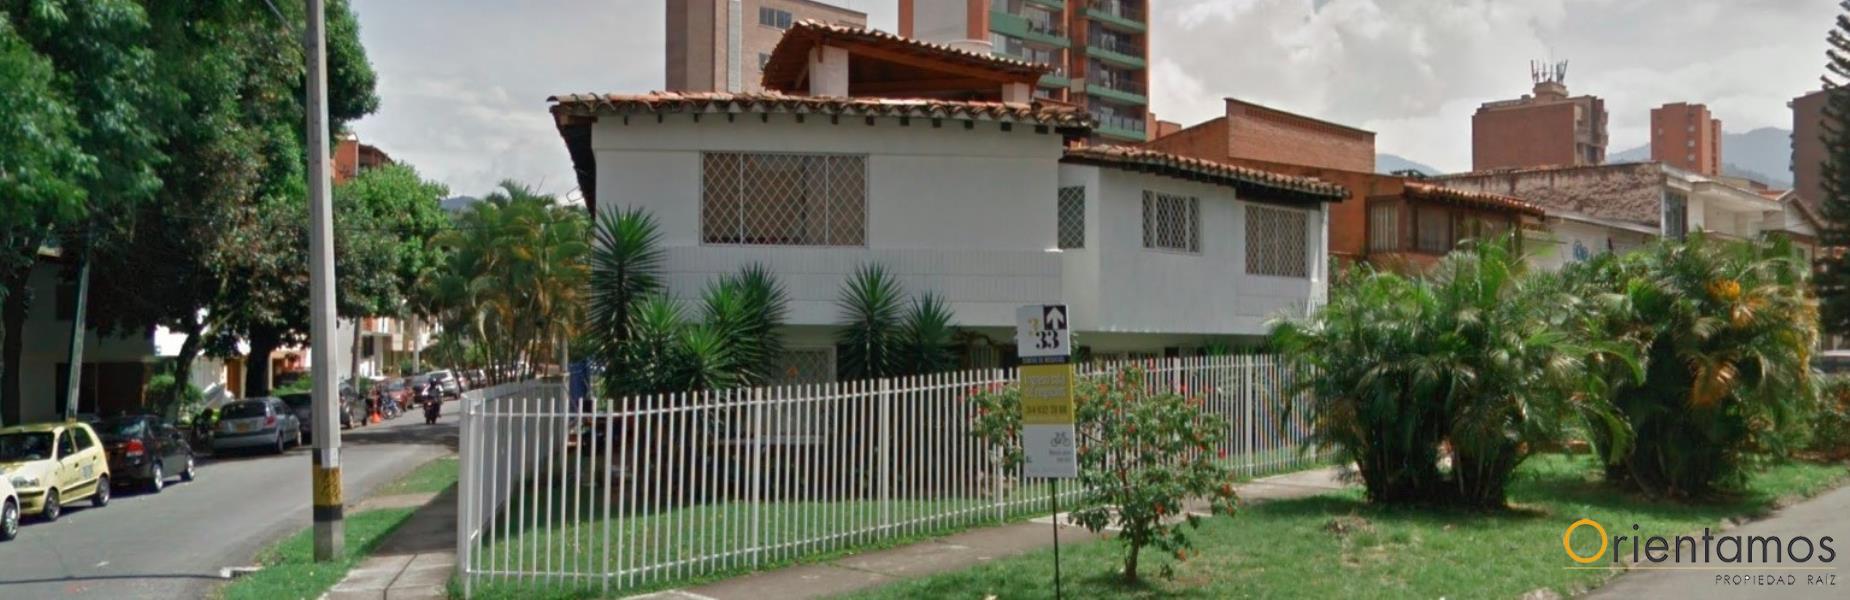 Casa para el arriendo en Medellin - Laureles el codigo es 14936 foto numero 5